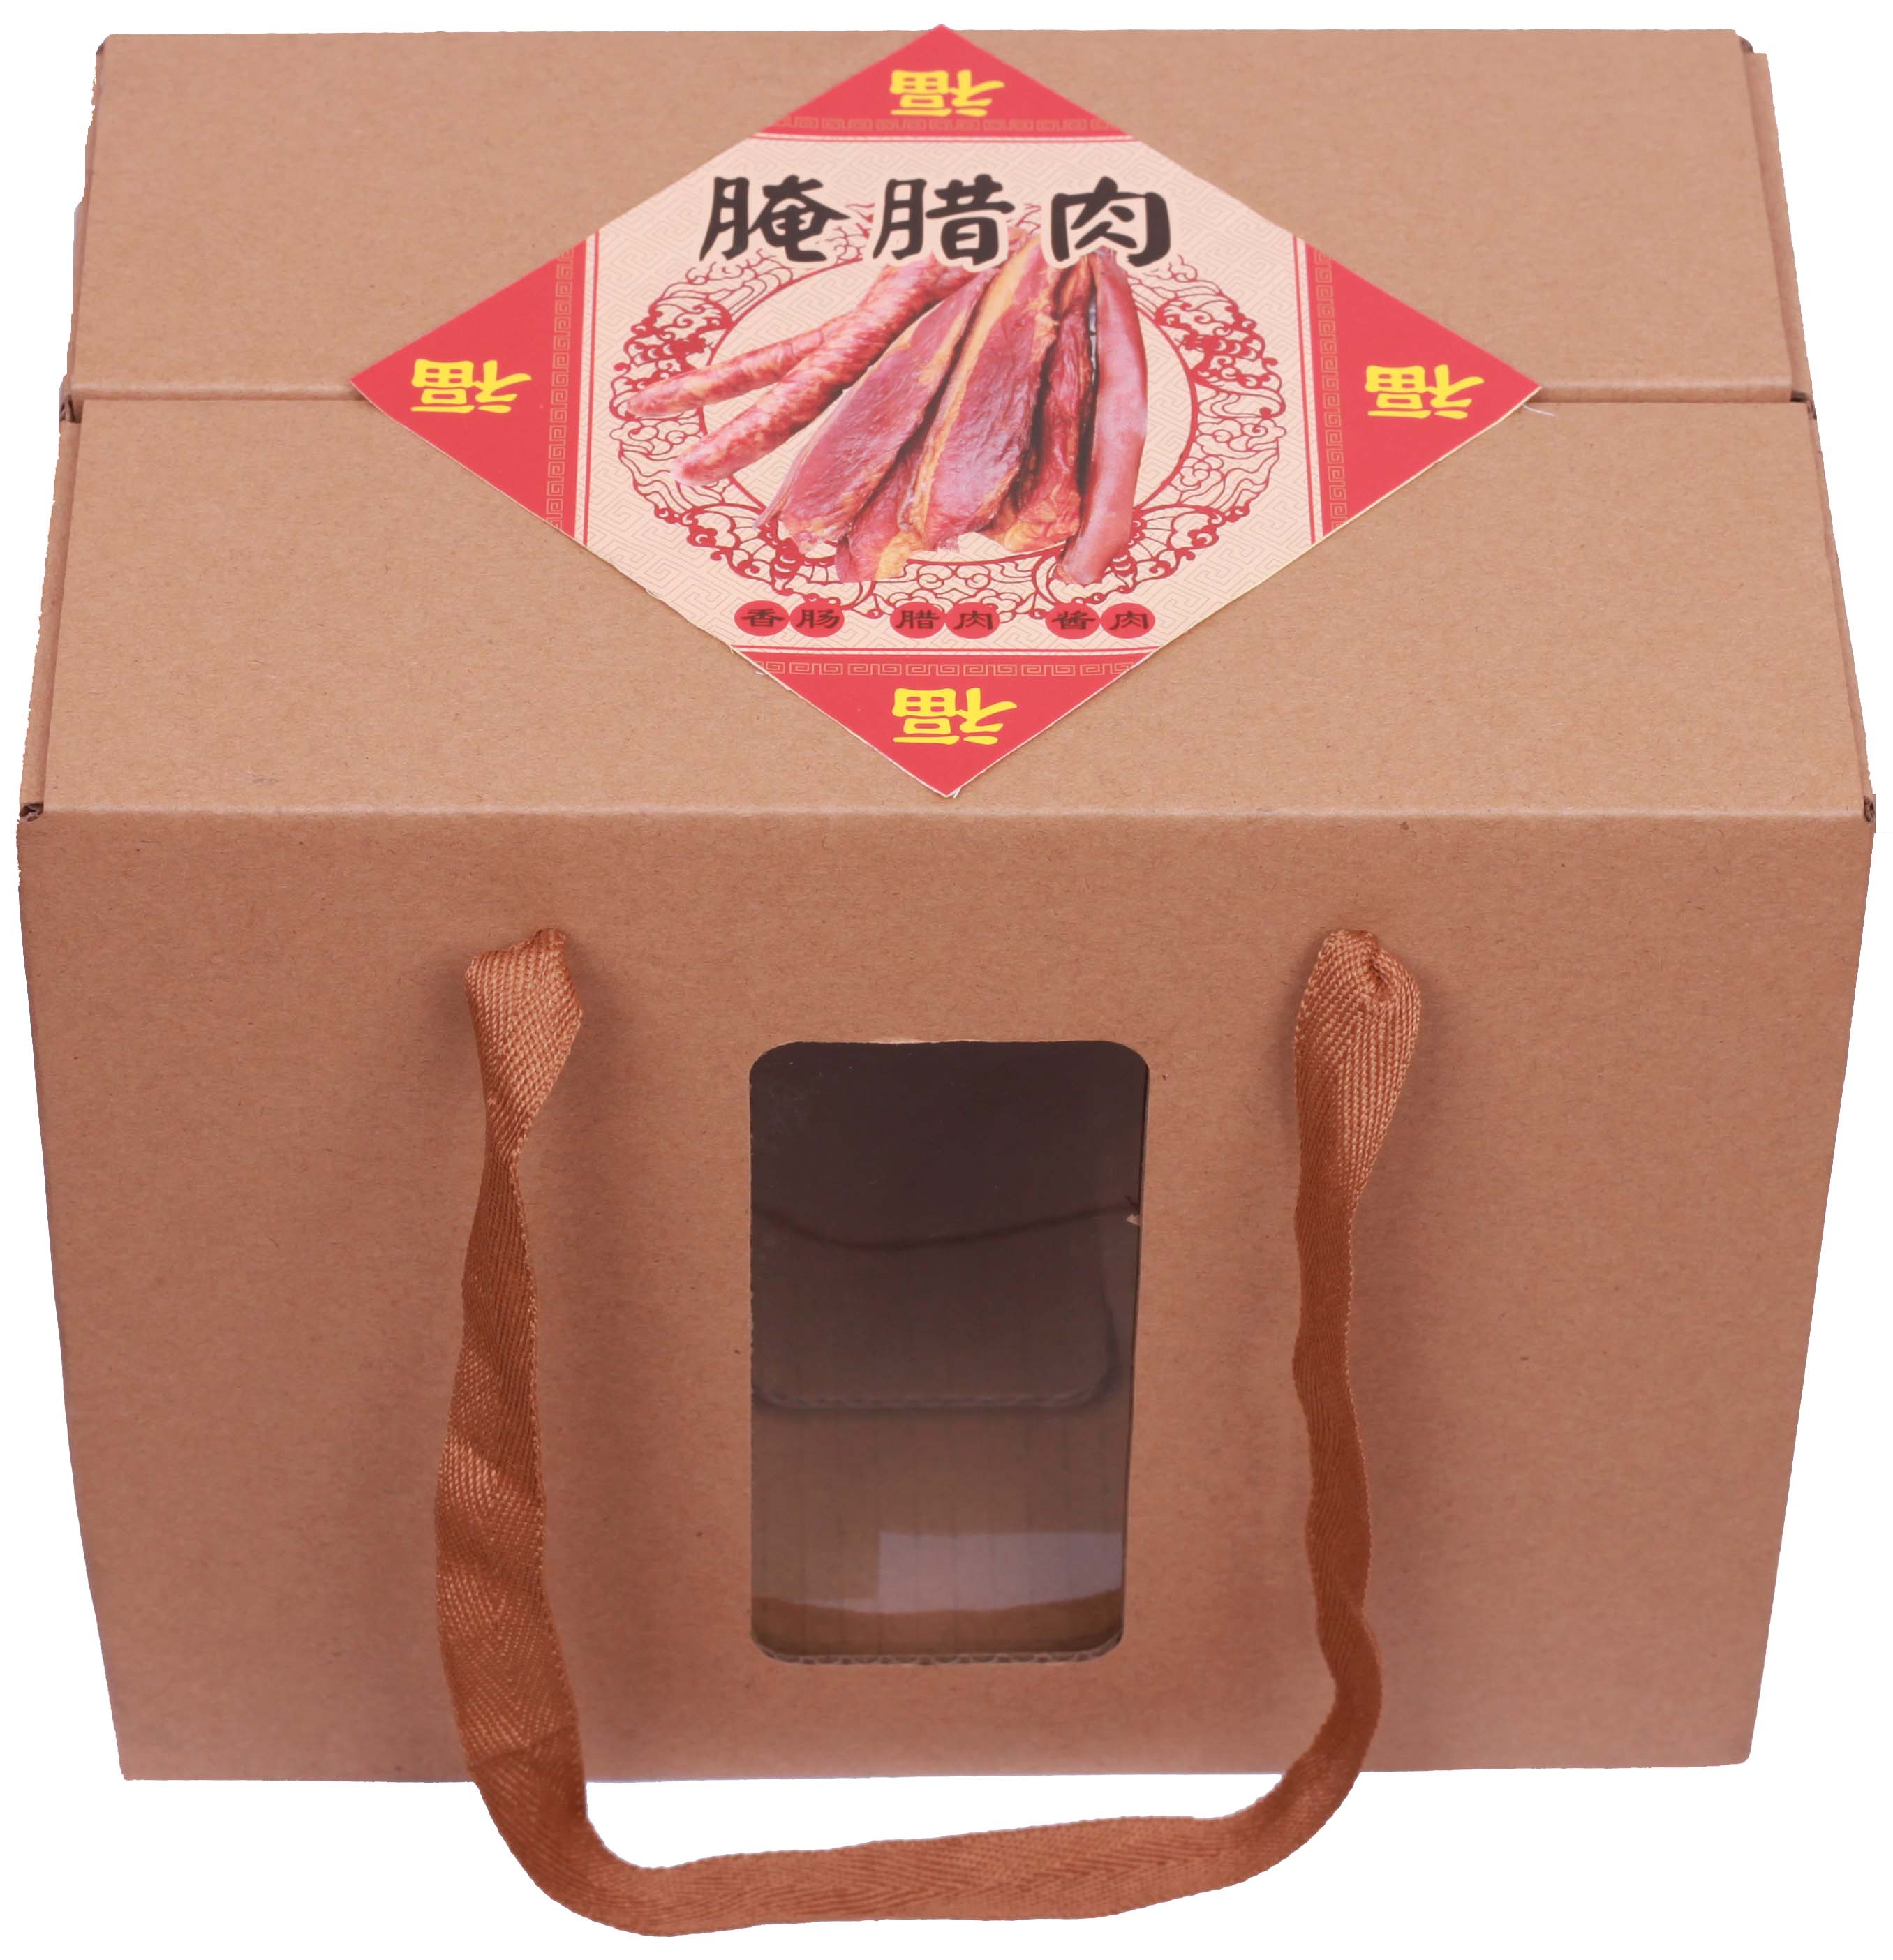 现货香肠腊肉水果干果鸡蛋土特产通用牛皮纸礼盒子包装纸箱批发